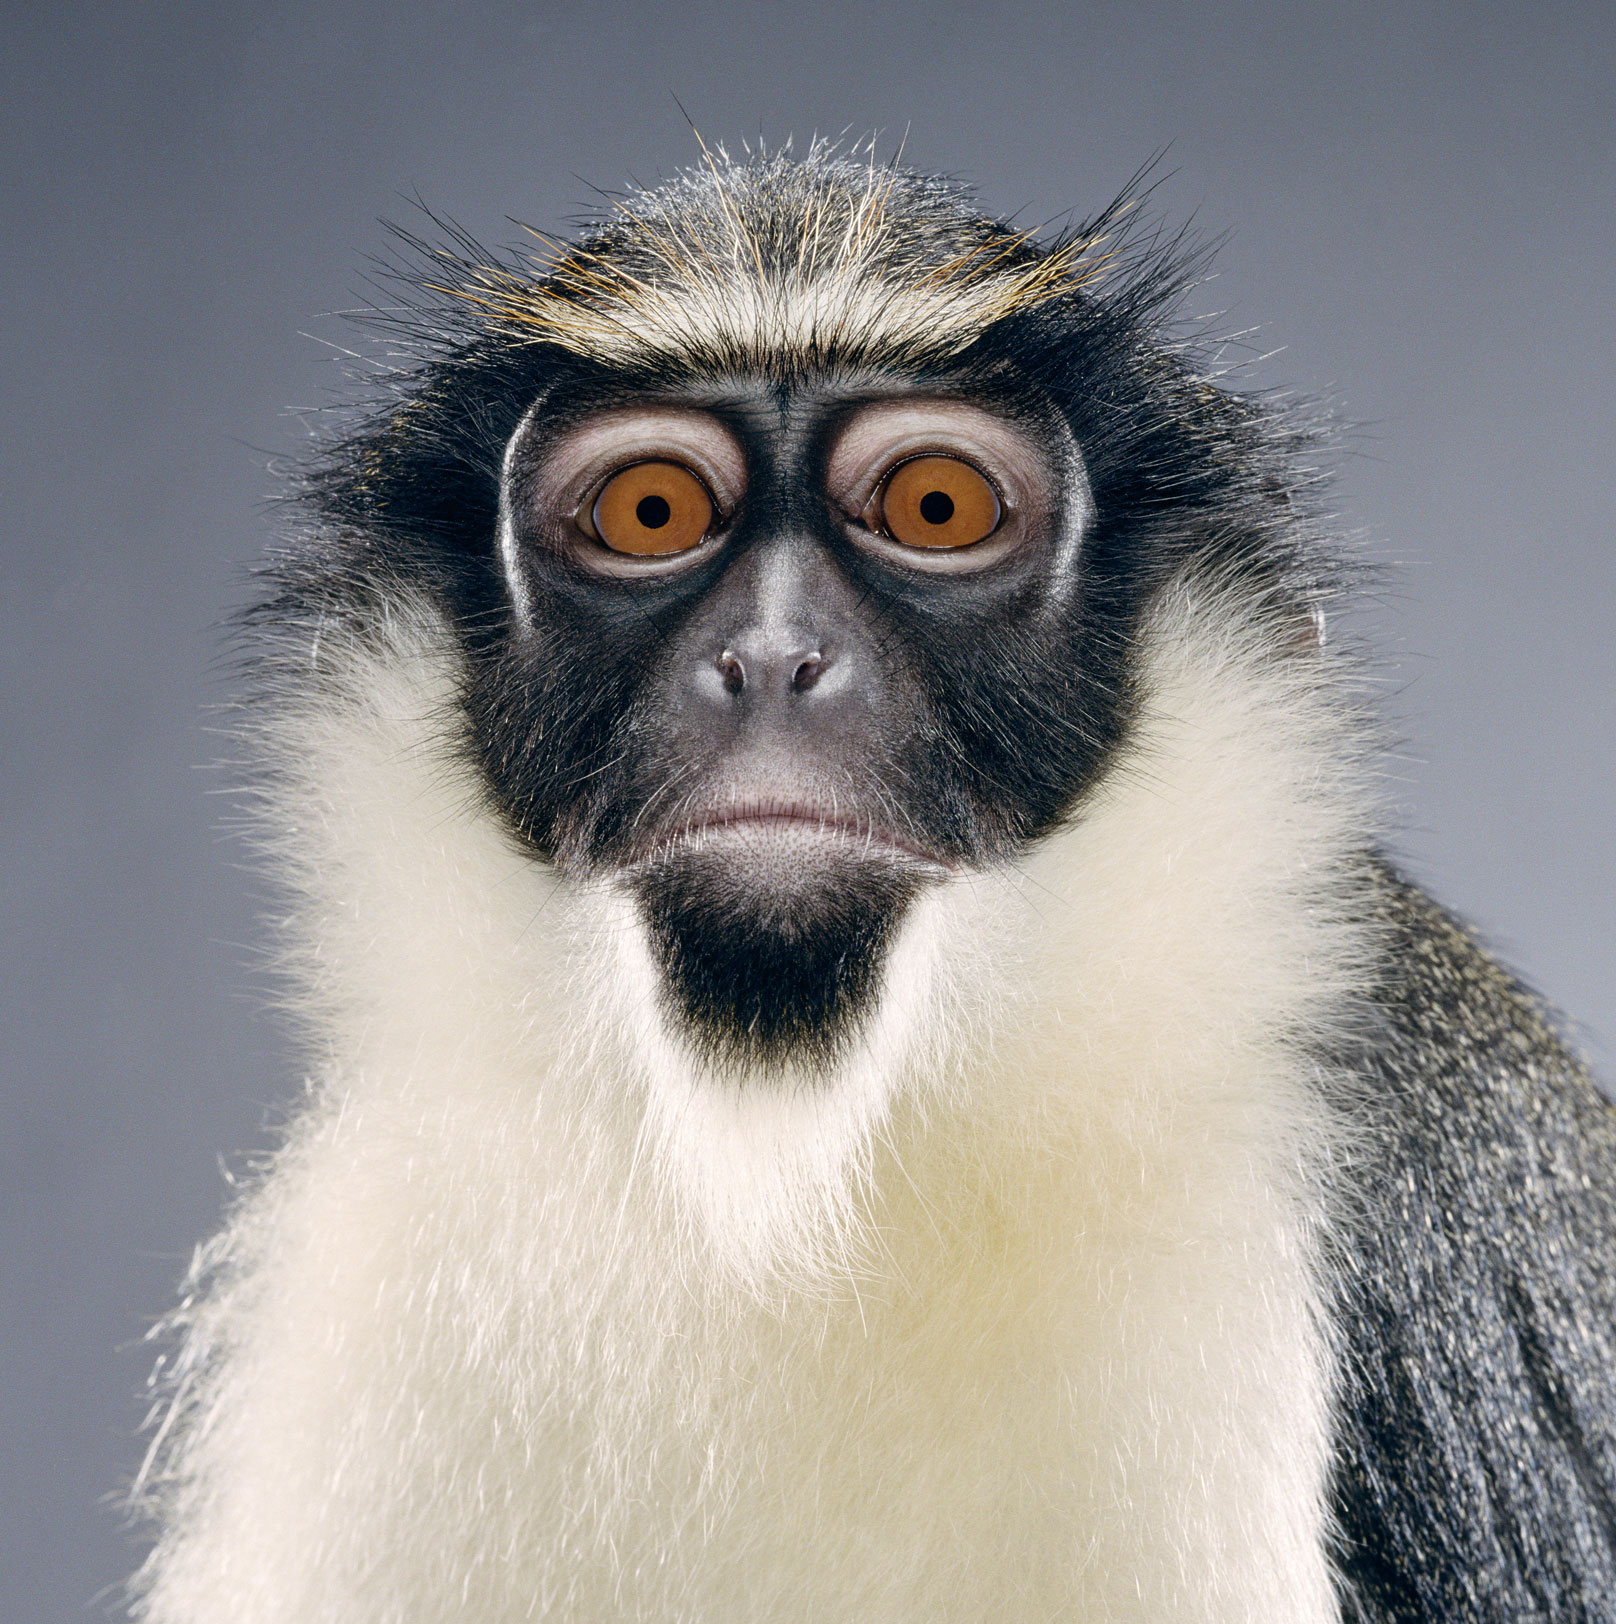 Astonishing Animals – The Diana Monkey